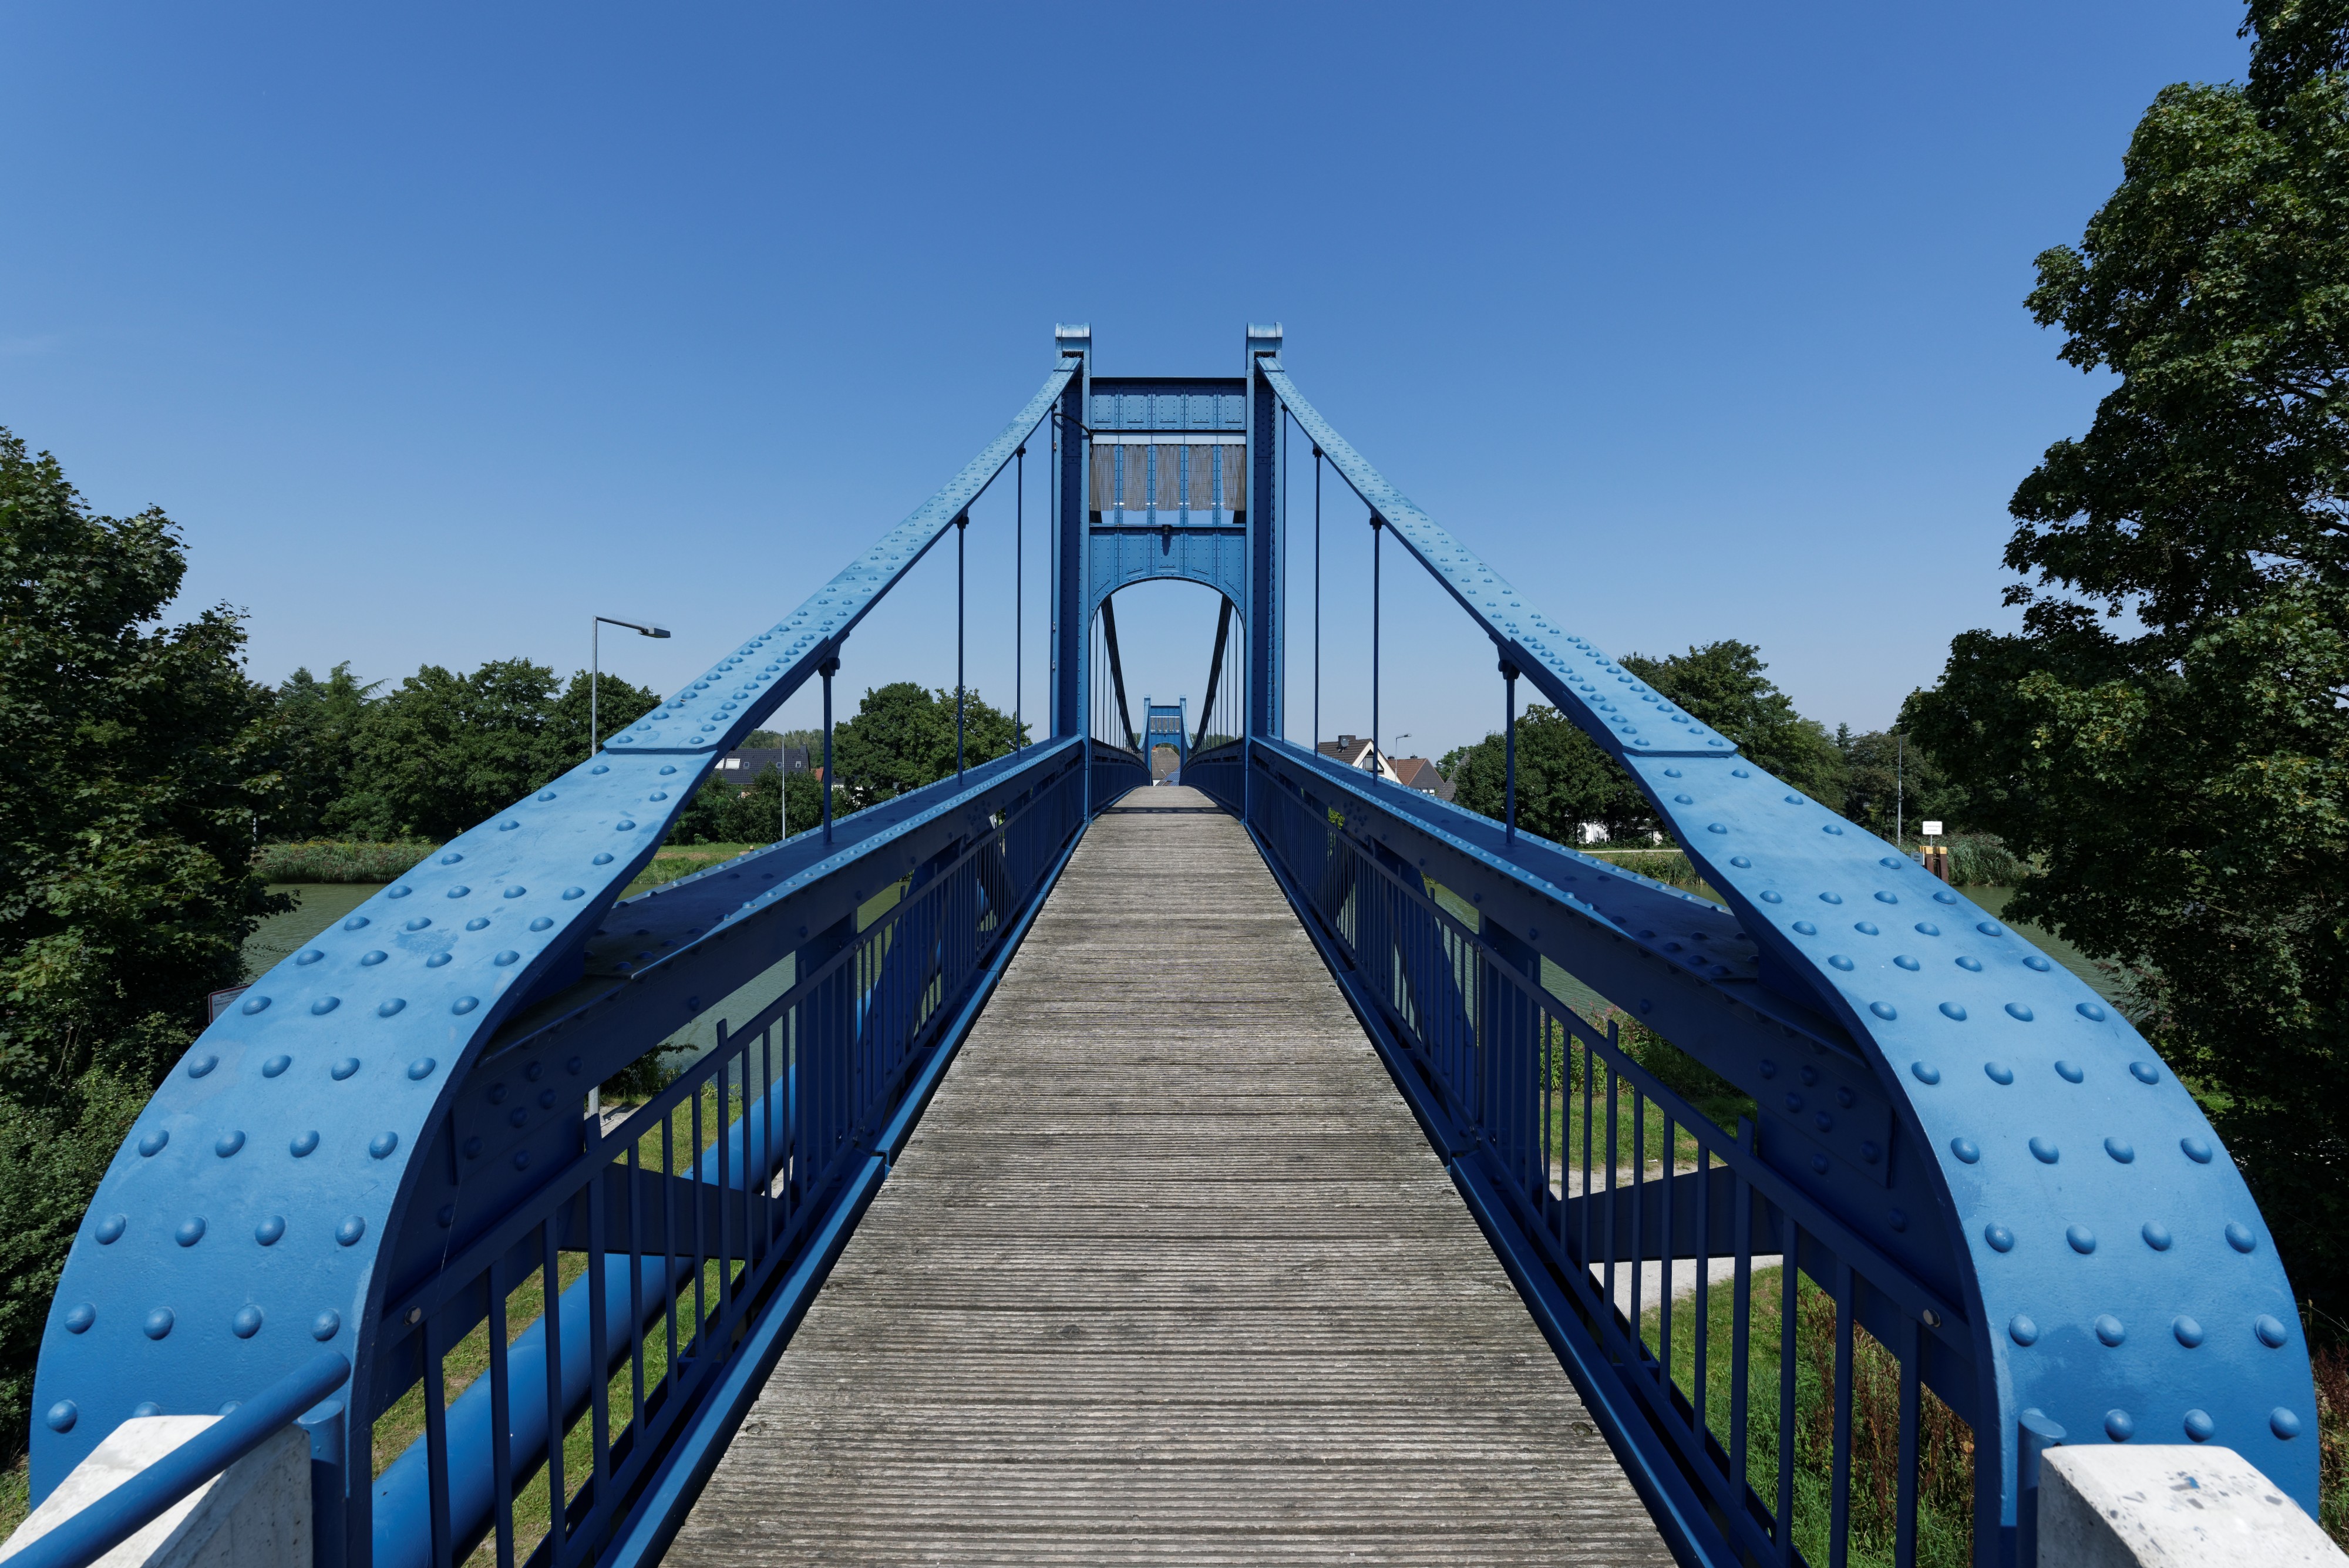 Fußgängerhängebrücke Schulweg-Steg im Stadtbezirk Hamm-Uentrop der kreisfreien Stadt Hamm in Nordrhein-Westfalen A1